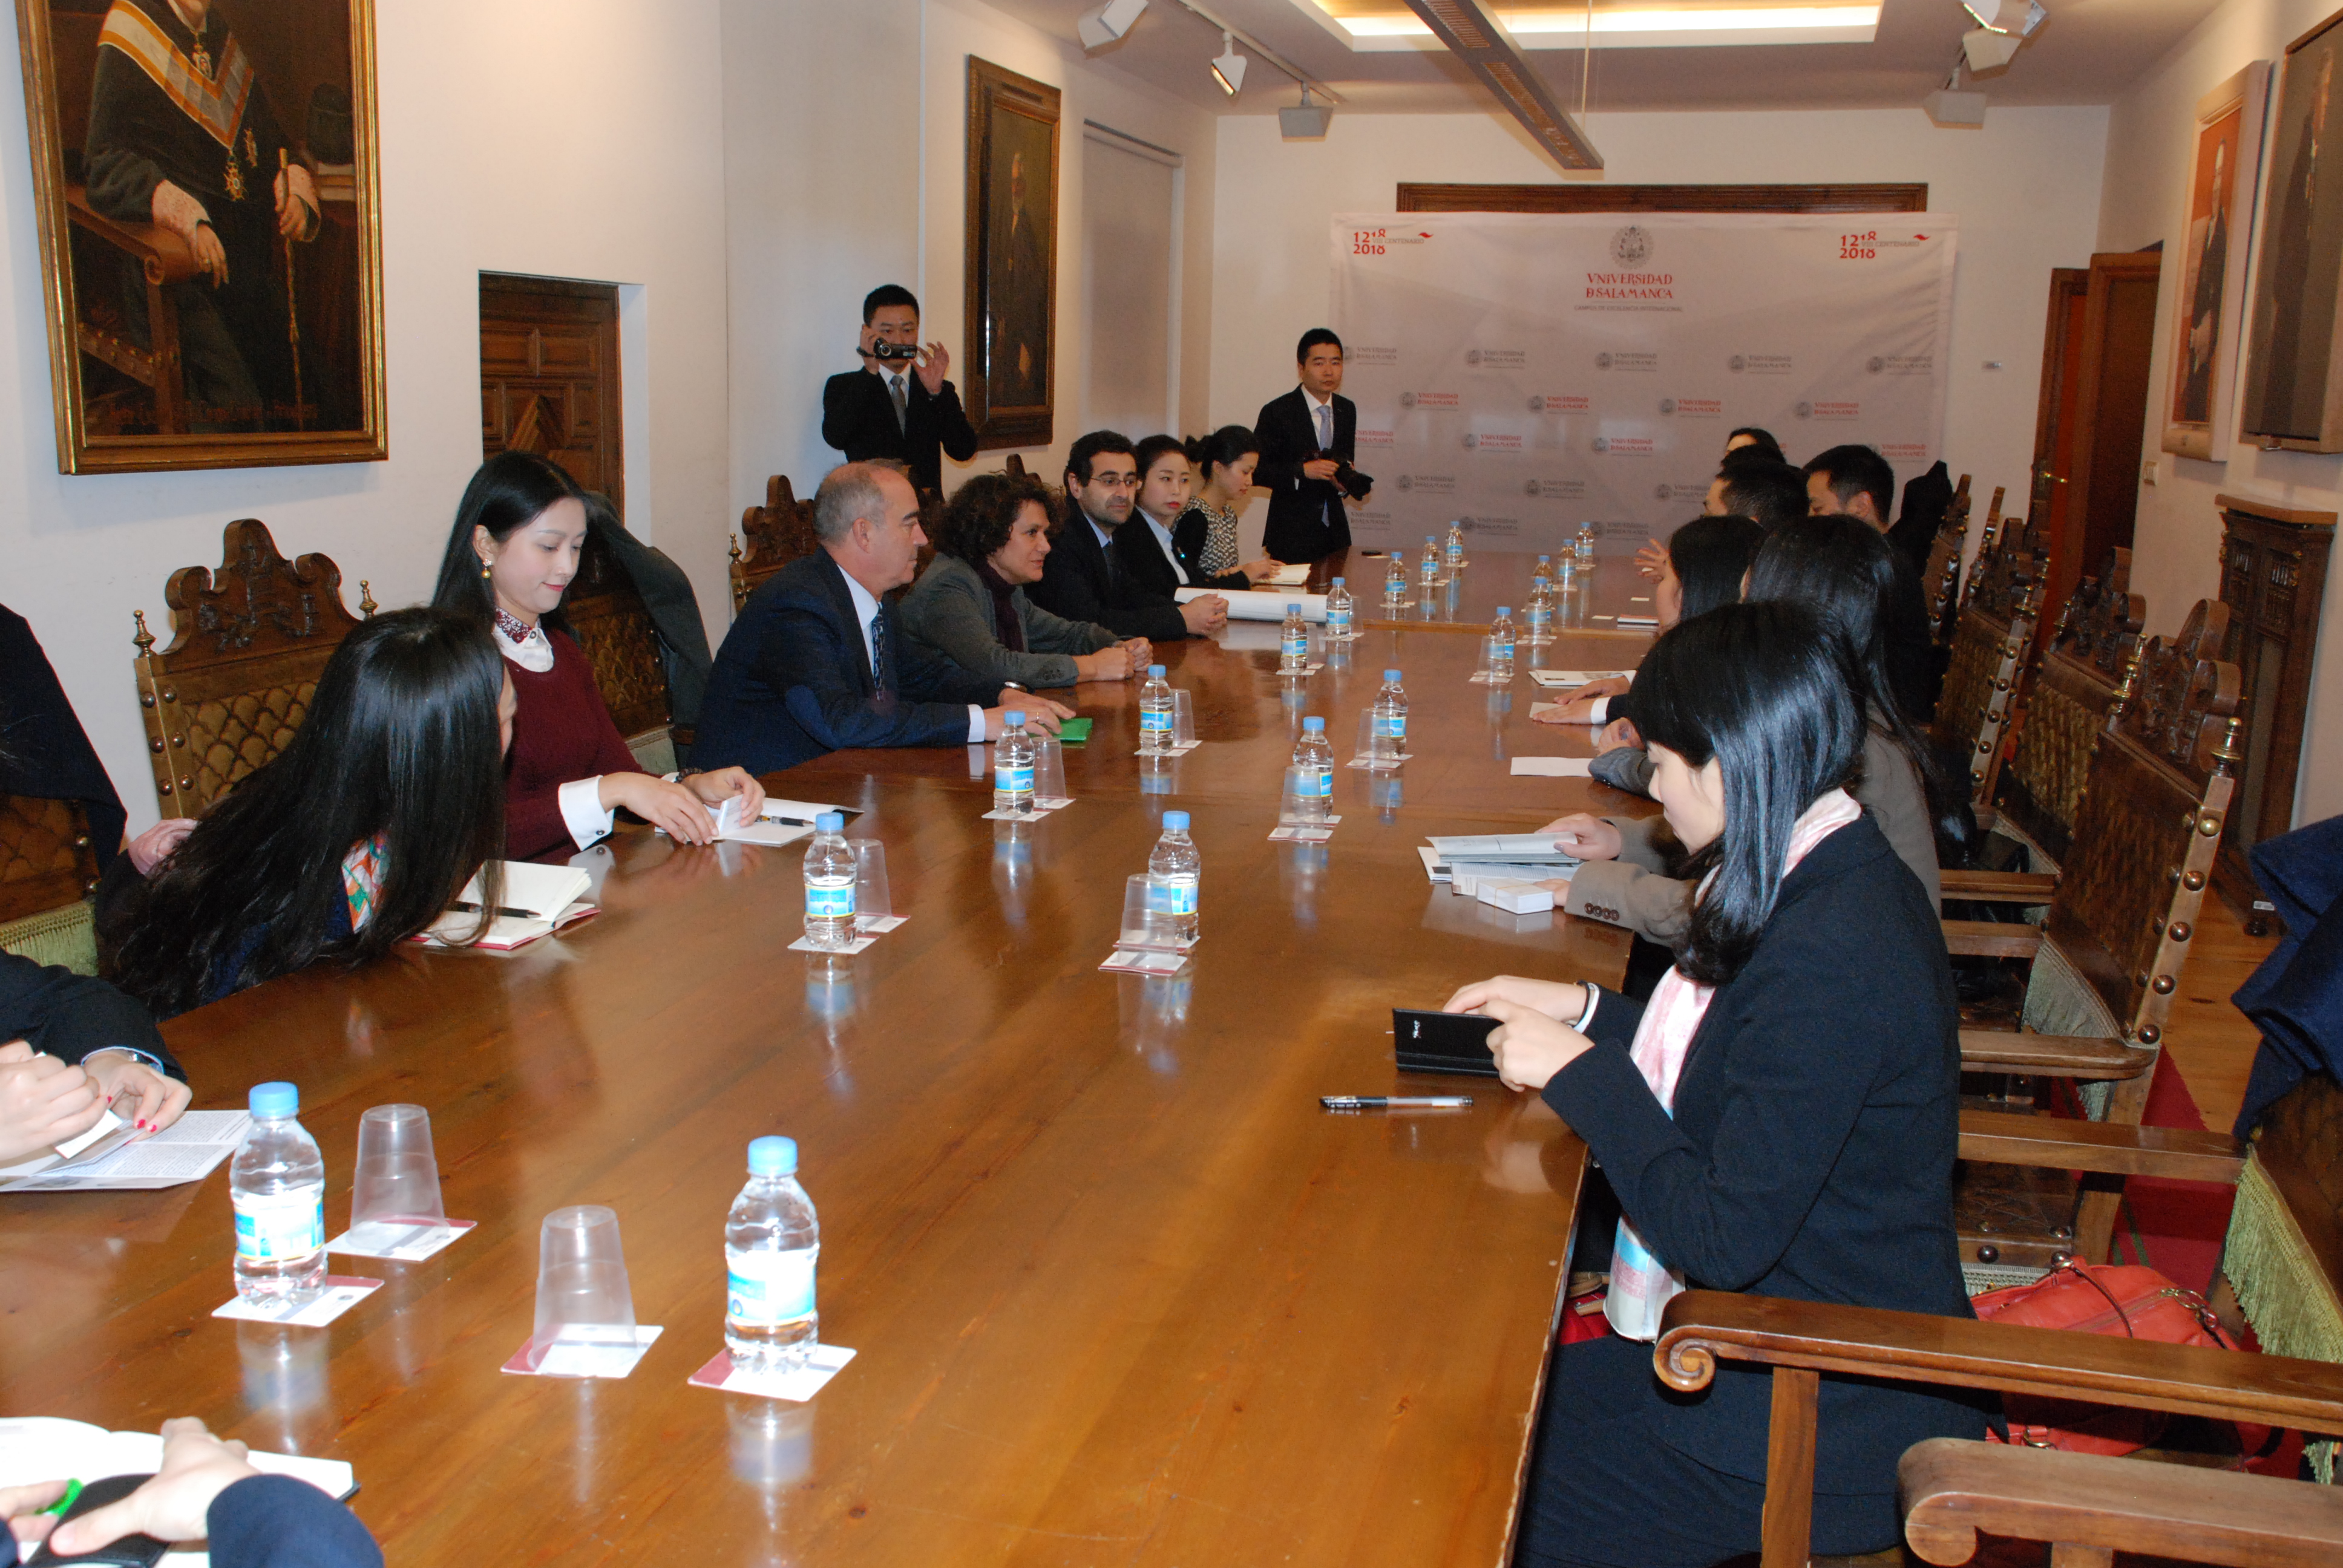 Políticos chinos de la provincia de Sichuan visitan la Universidad de Salamanca para conocer modelos de desarrollo cultural